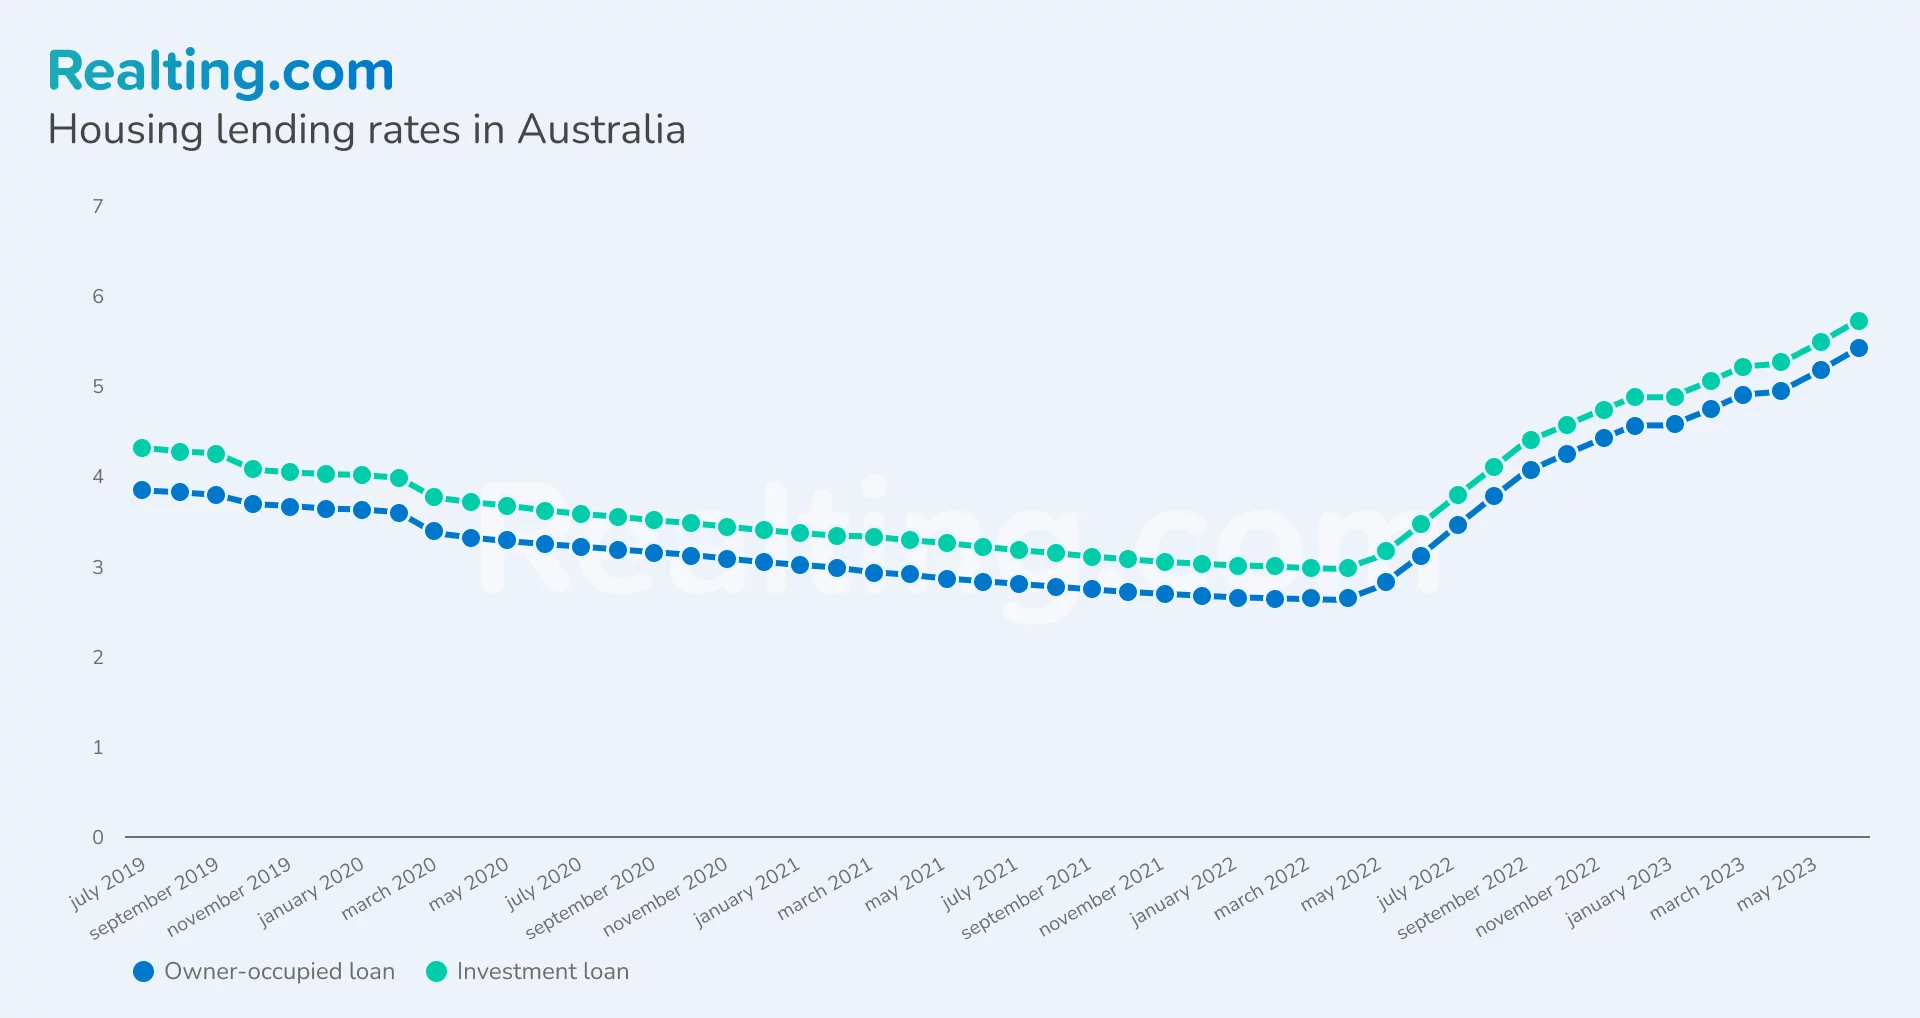 Housing lending rates in Australia